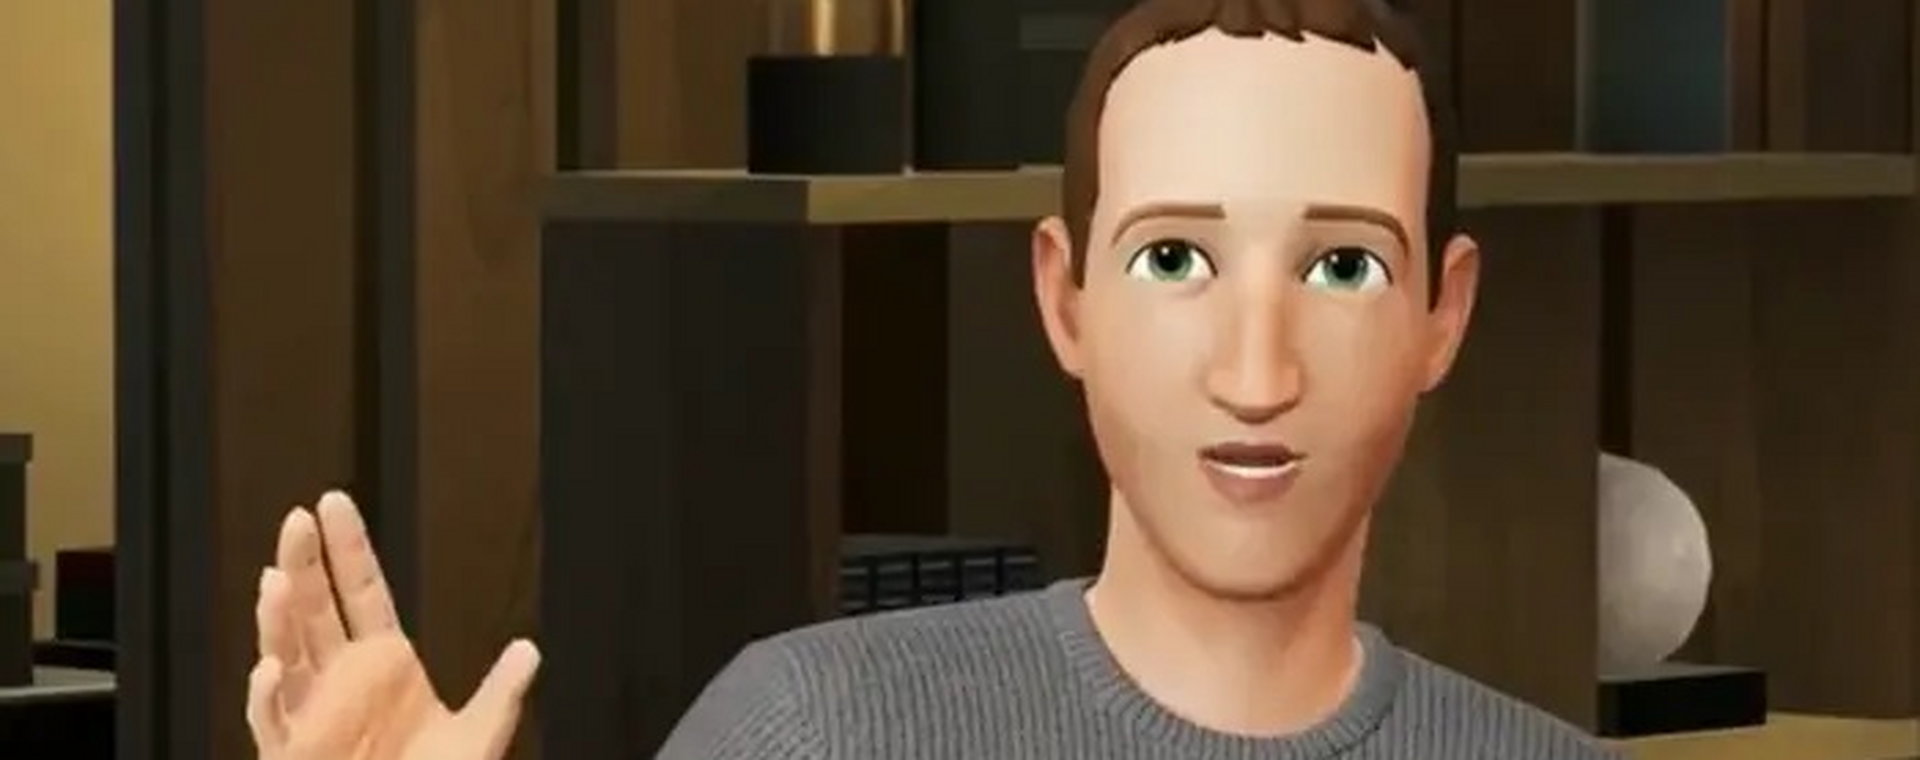 Mark Zuckerberg pokazał pełny awatar na Meta Connect, wydarzeniu służącym popularyzacji Meta.